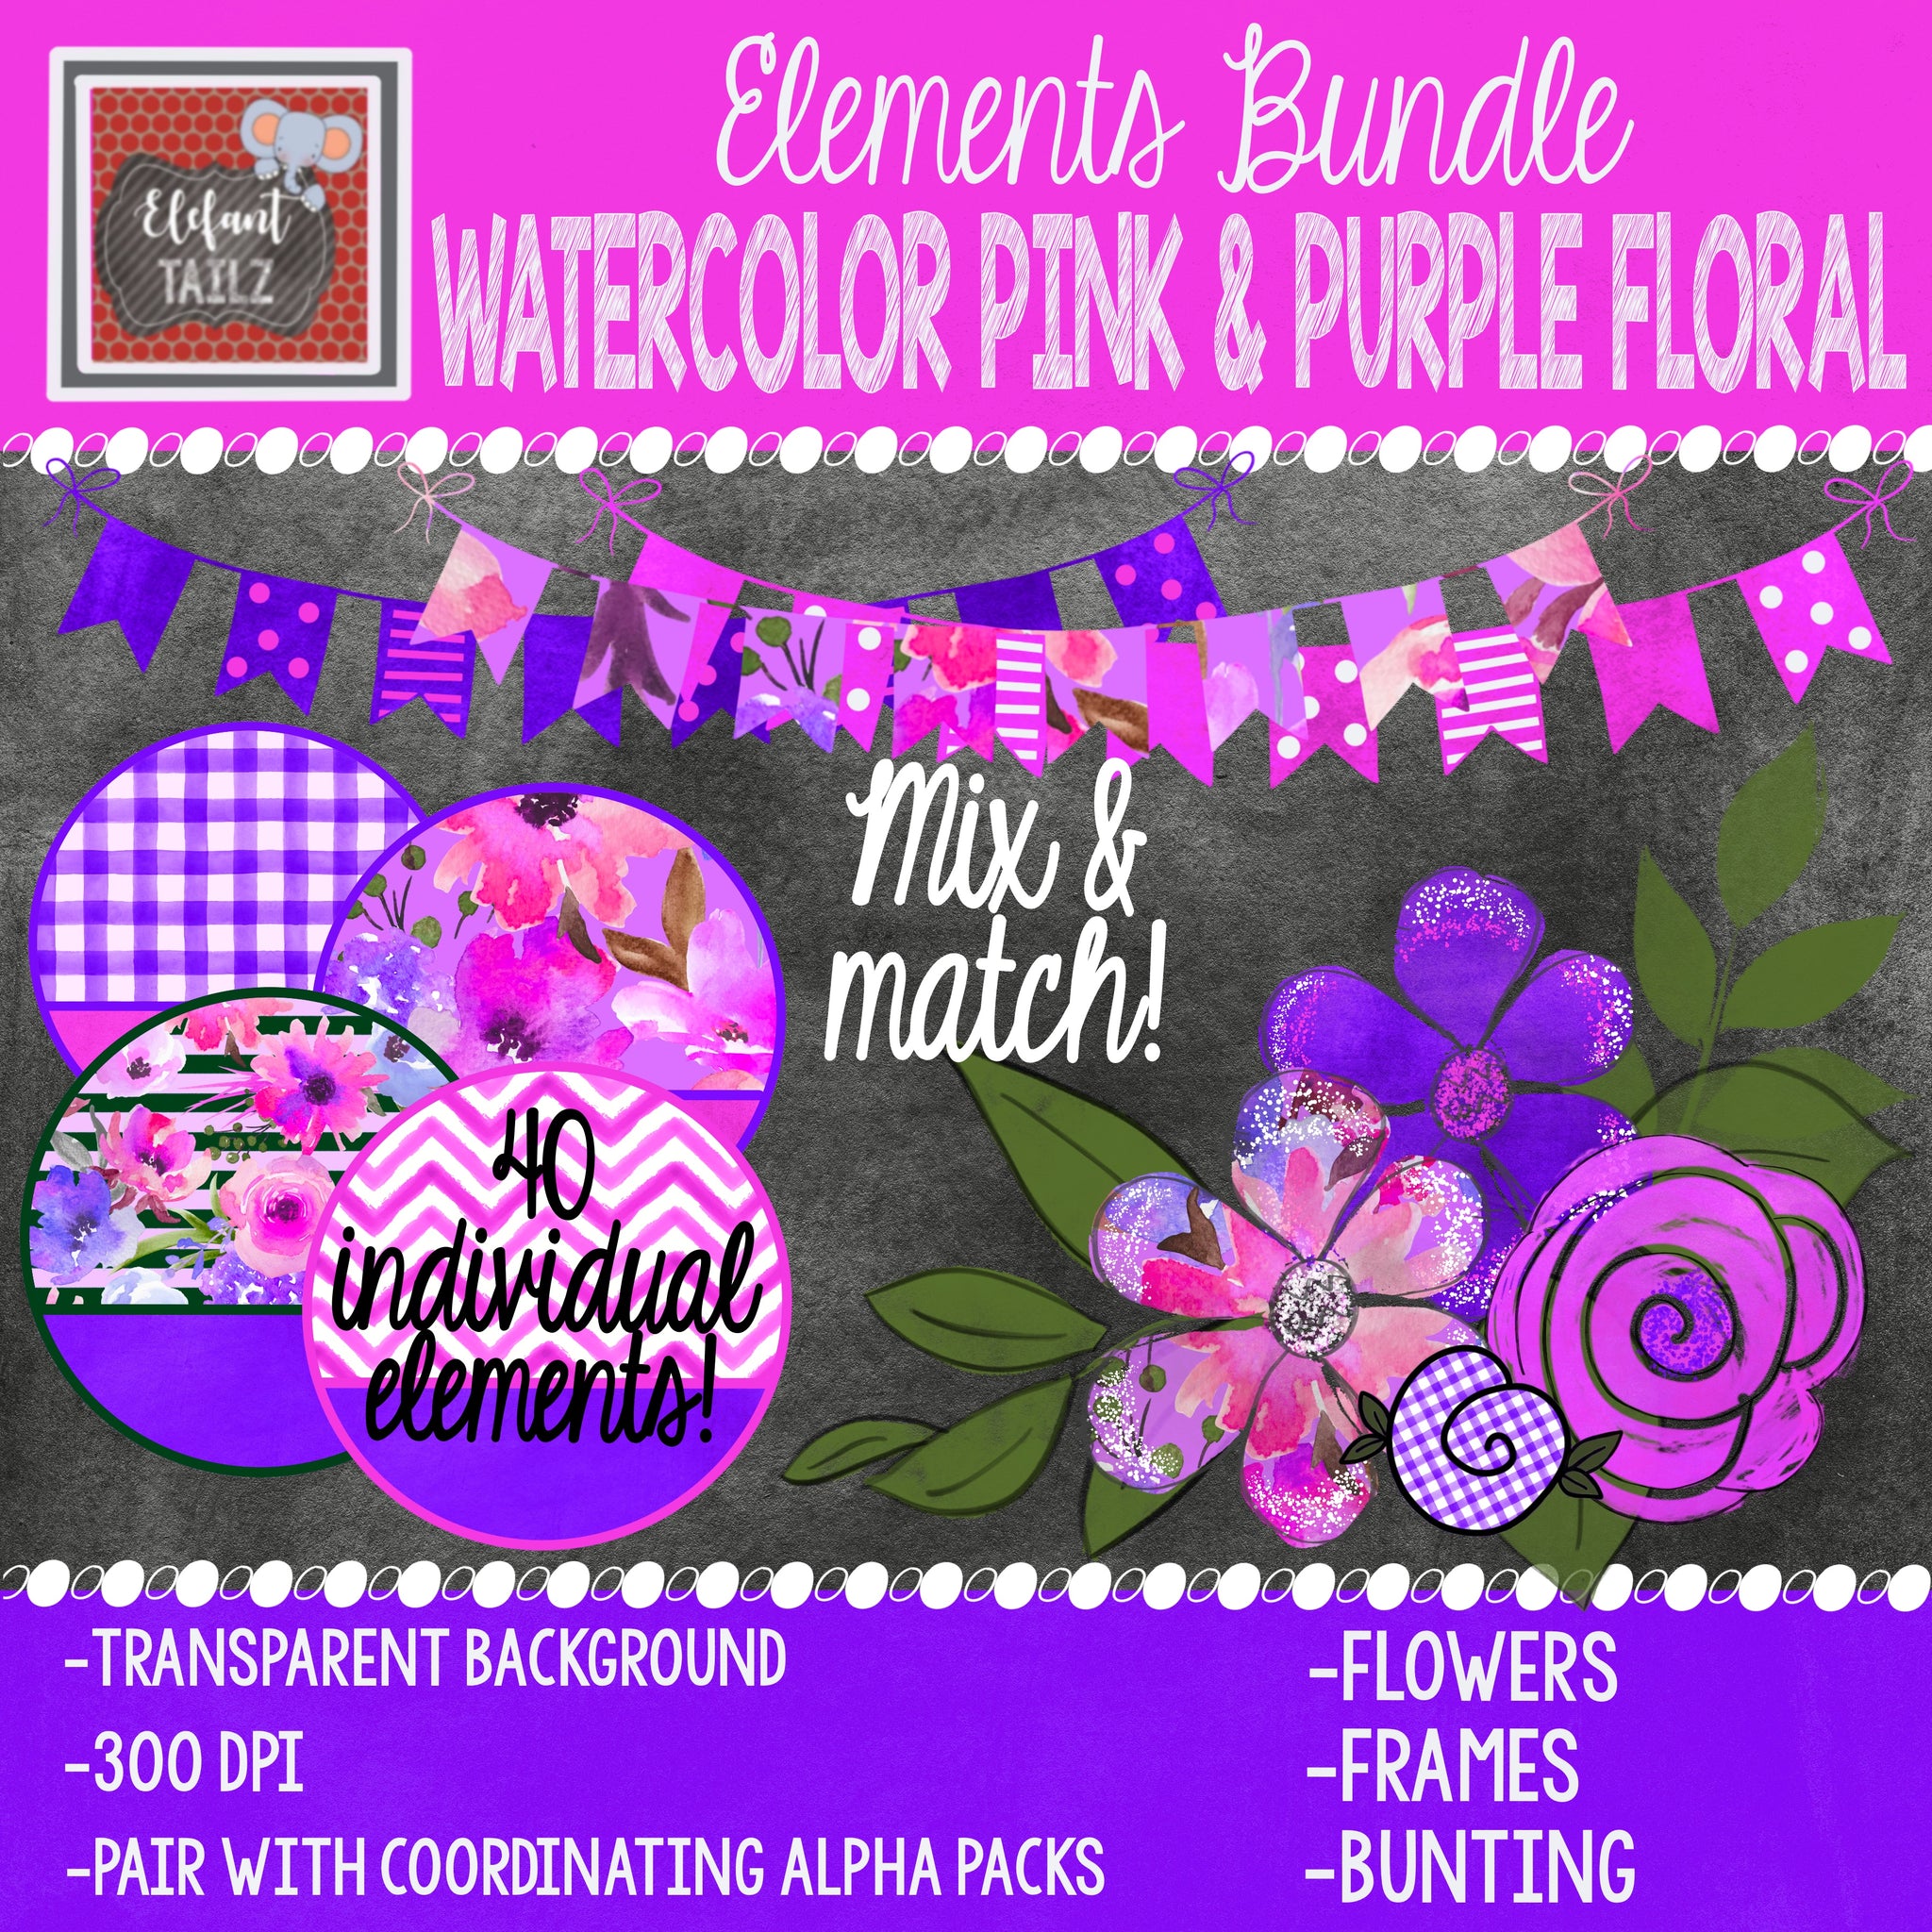 Watercolor Pink & Purple Floral Elements BUNDLE